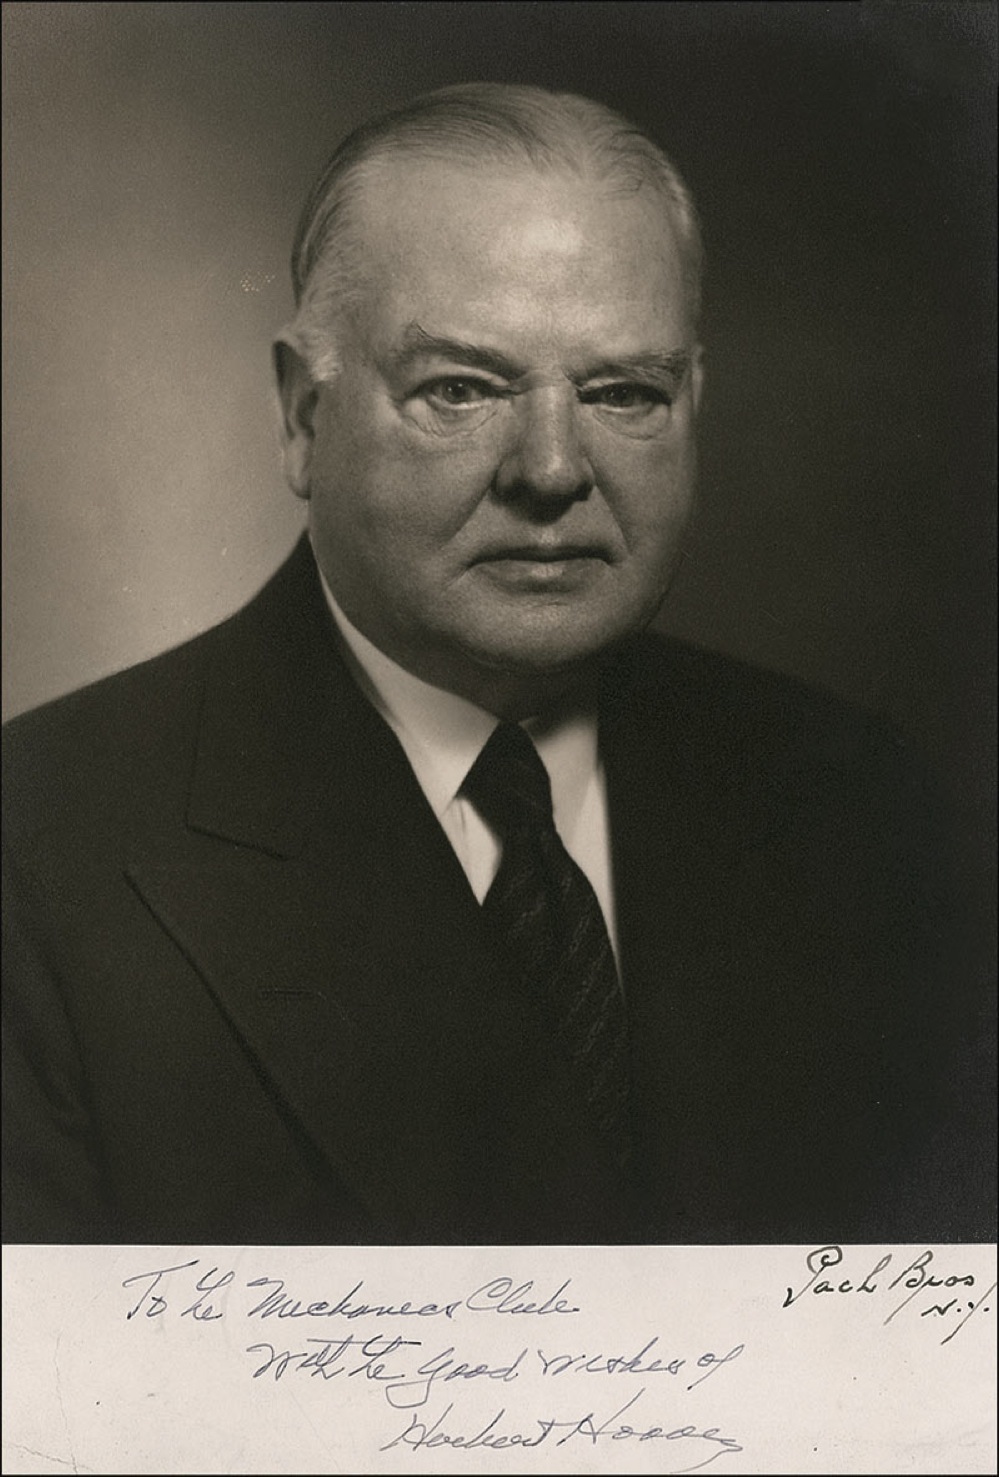 Lot #91 Herbert Hoover